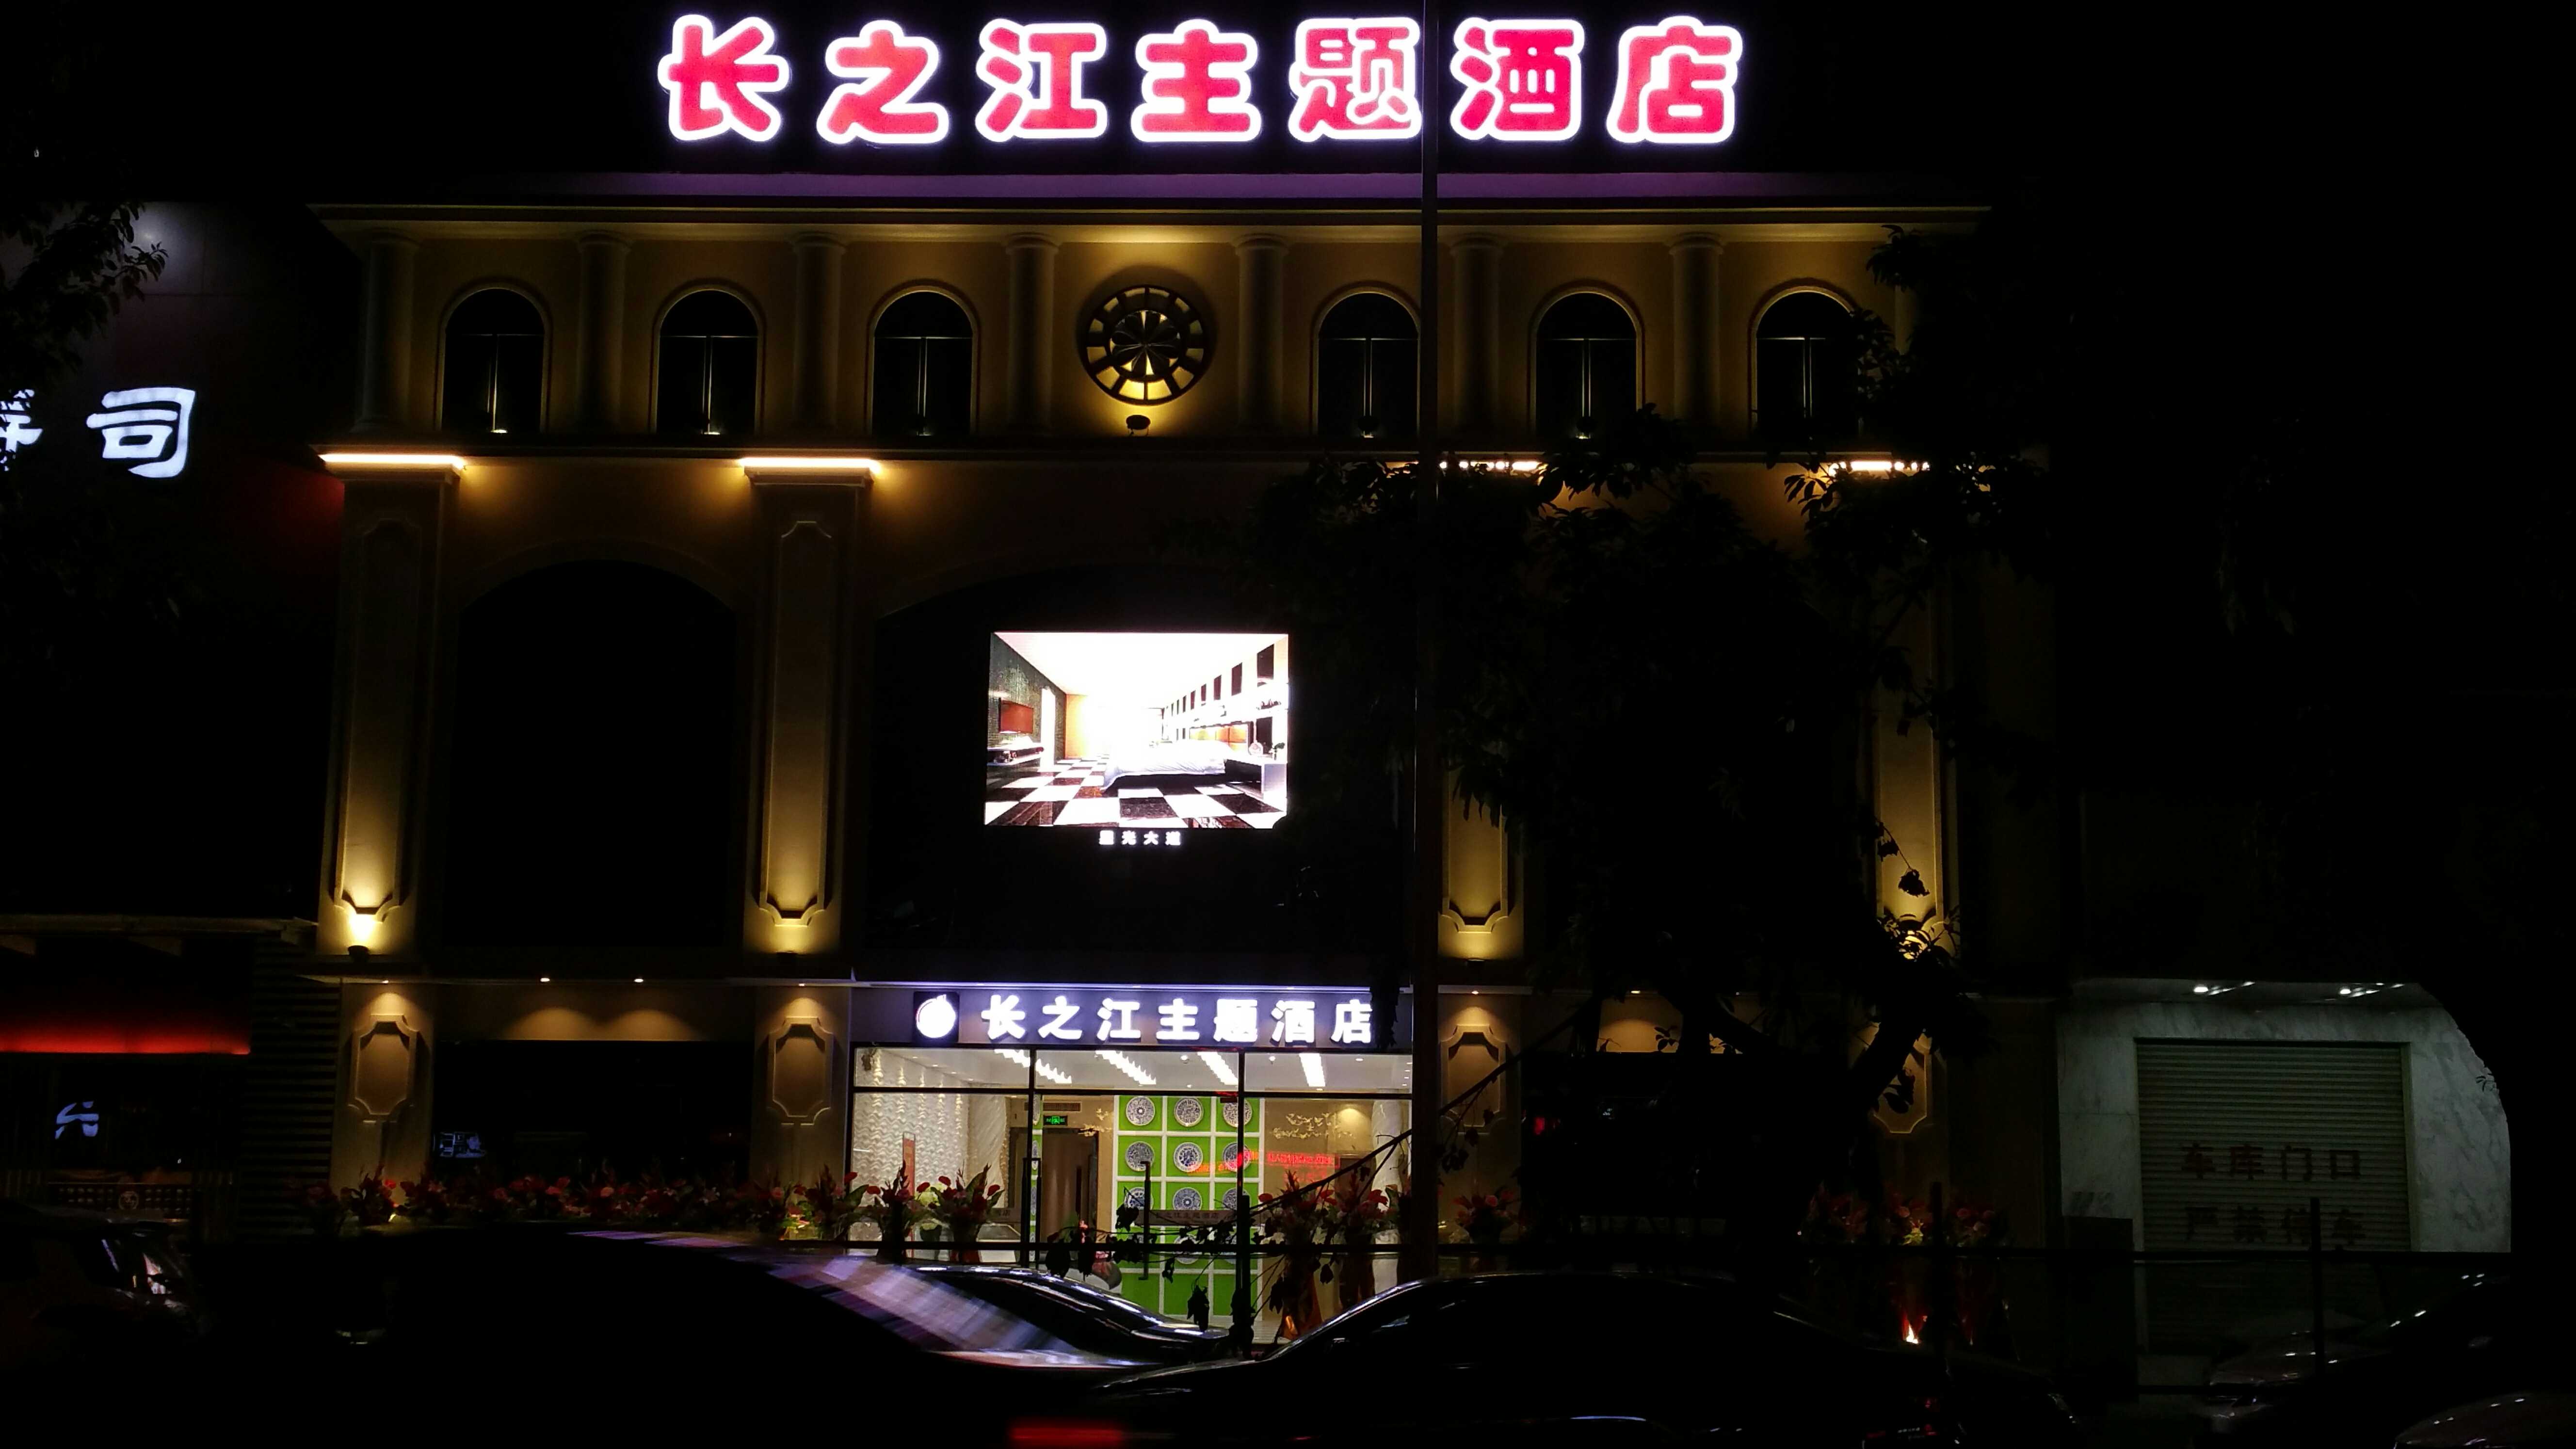 長之江酒店戶外P8全彩顯示屏、發光字招牌